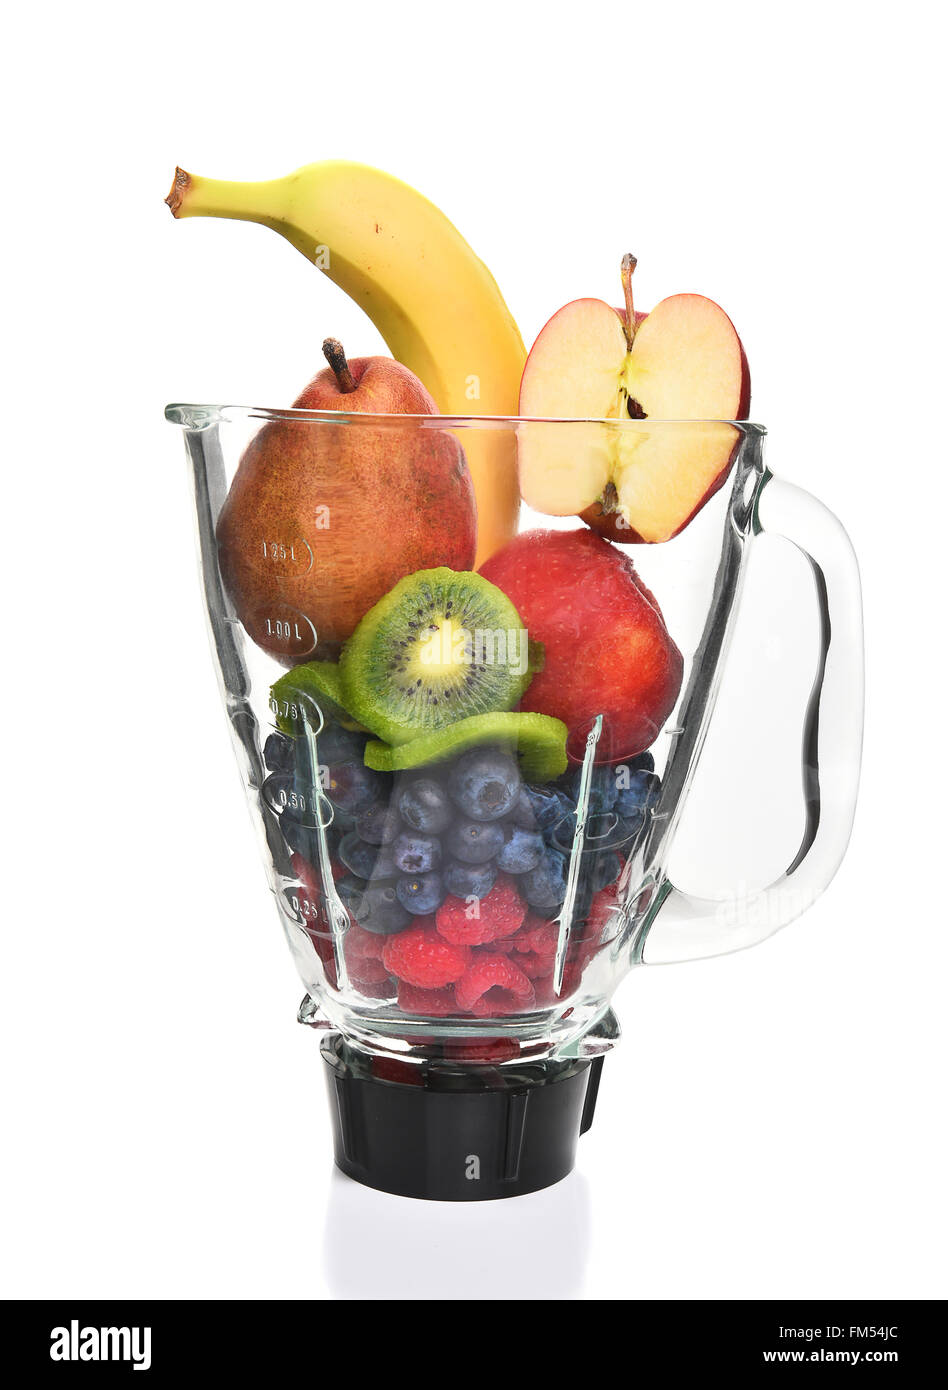 Un mélangeur rempli de fruits frais entier pour faire un smoothie ou un jus. Concept de saine alimentation. Banque D'Images